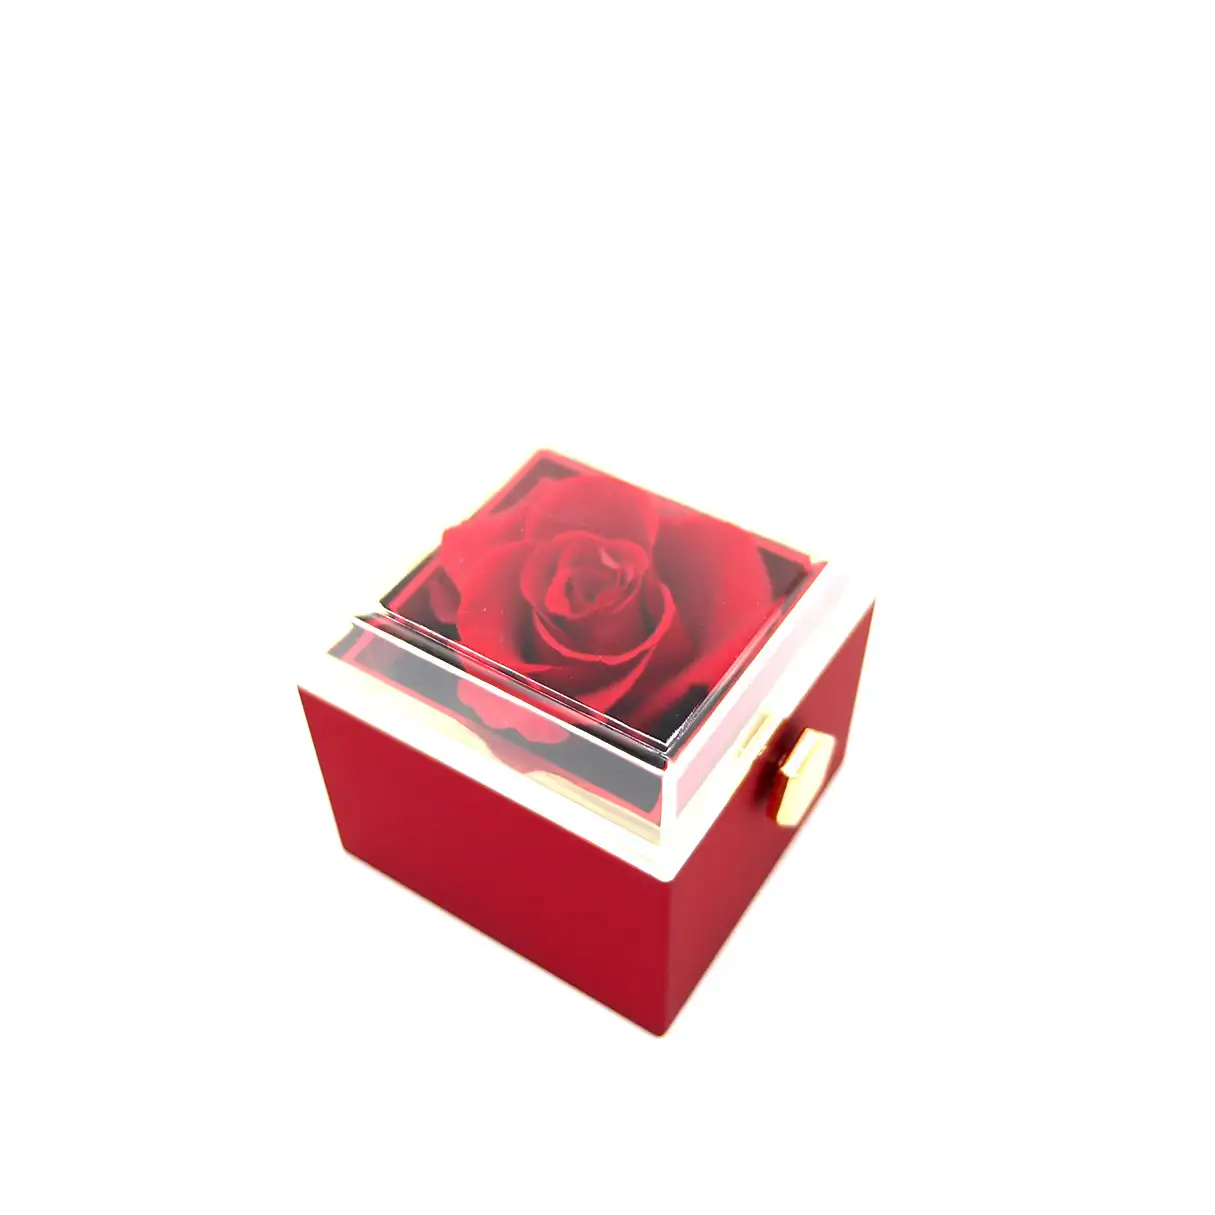 Rhodon Ring Box in Red